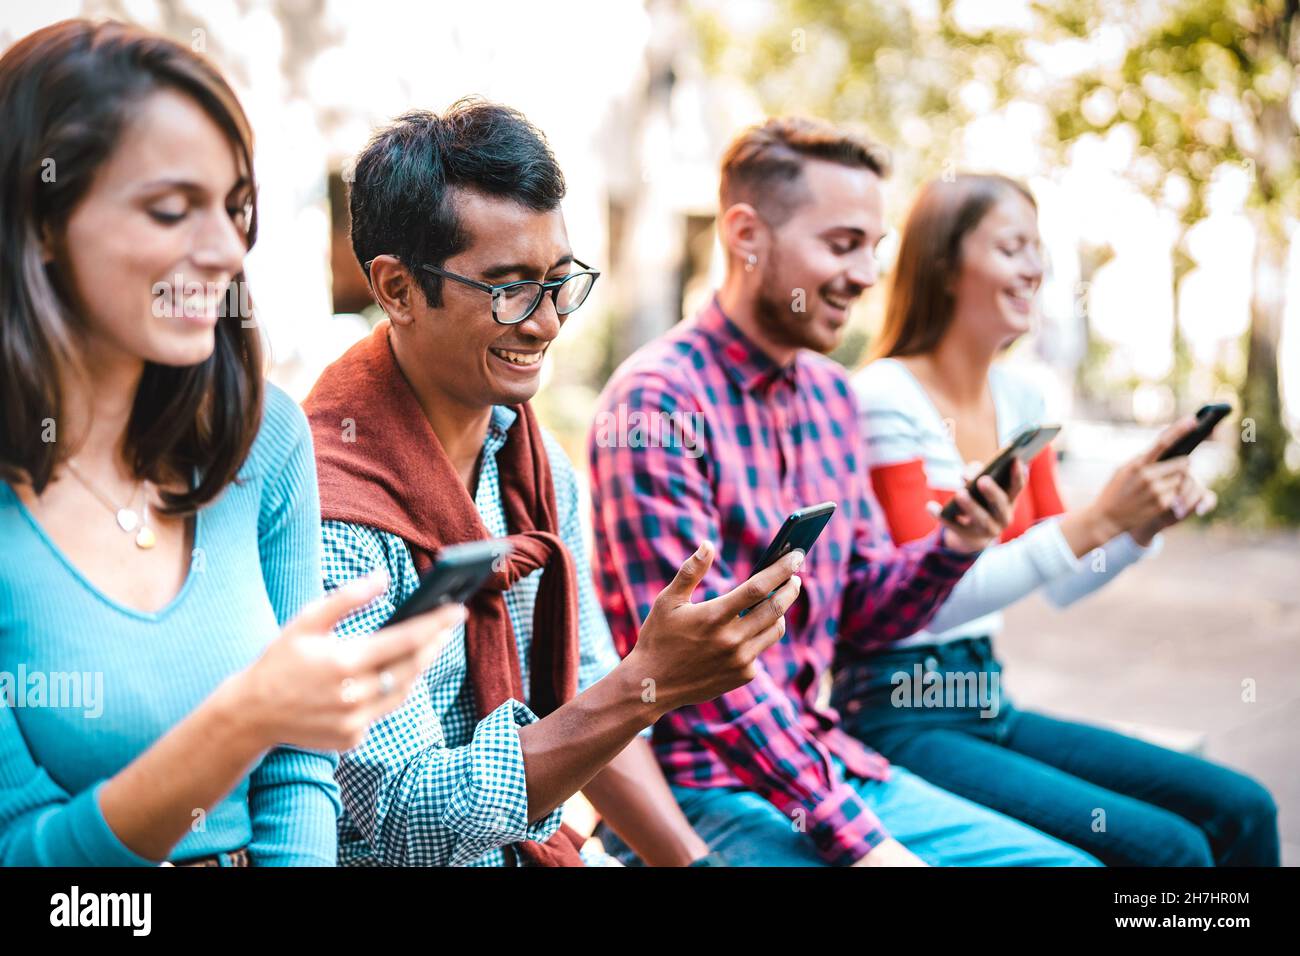 Multikulturelle Studenten lachen auf dem Universitätscampus mit dem Smartphone - Junge Leute Freunde, die vom Handy süchtig sind Stockfoto